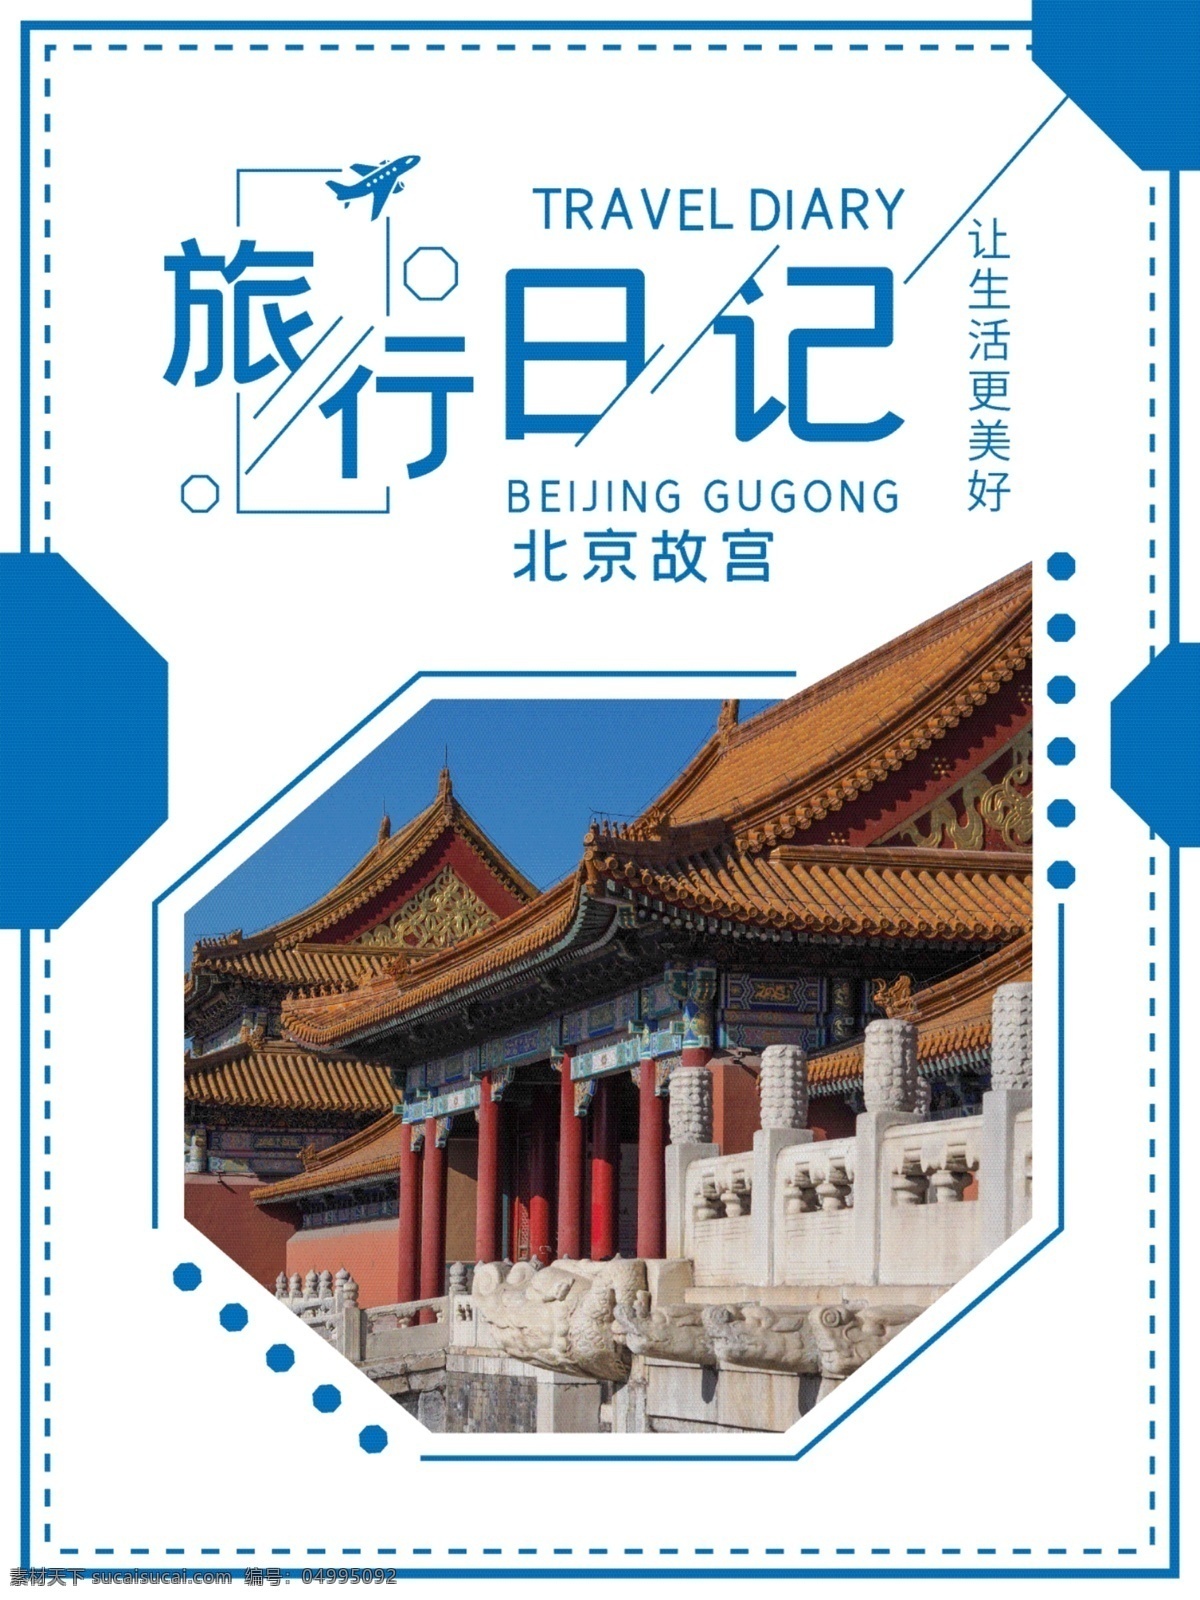 蓝色 简约 风格 北京故宫 旅行 日记 海报 蓝色海报 旅游海报 北京 故宫